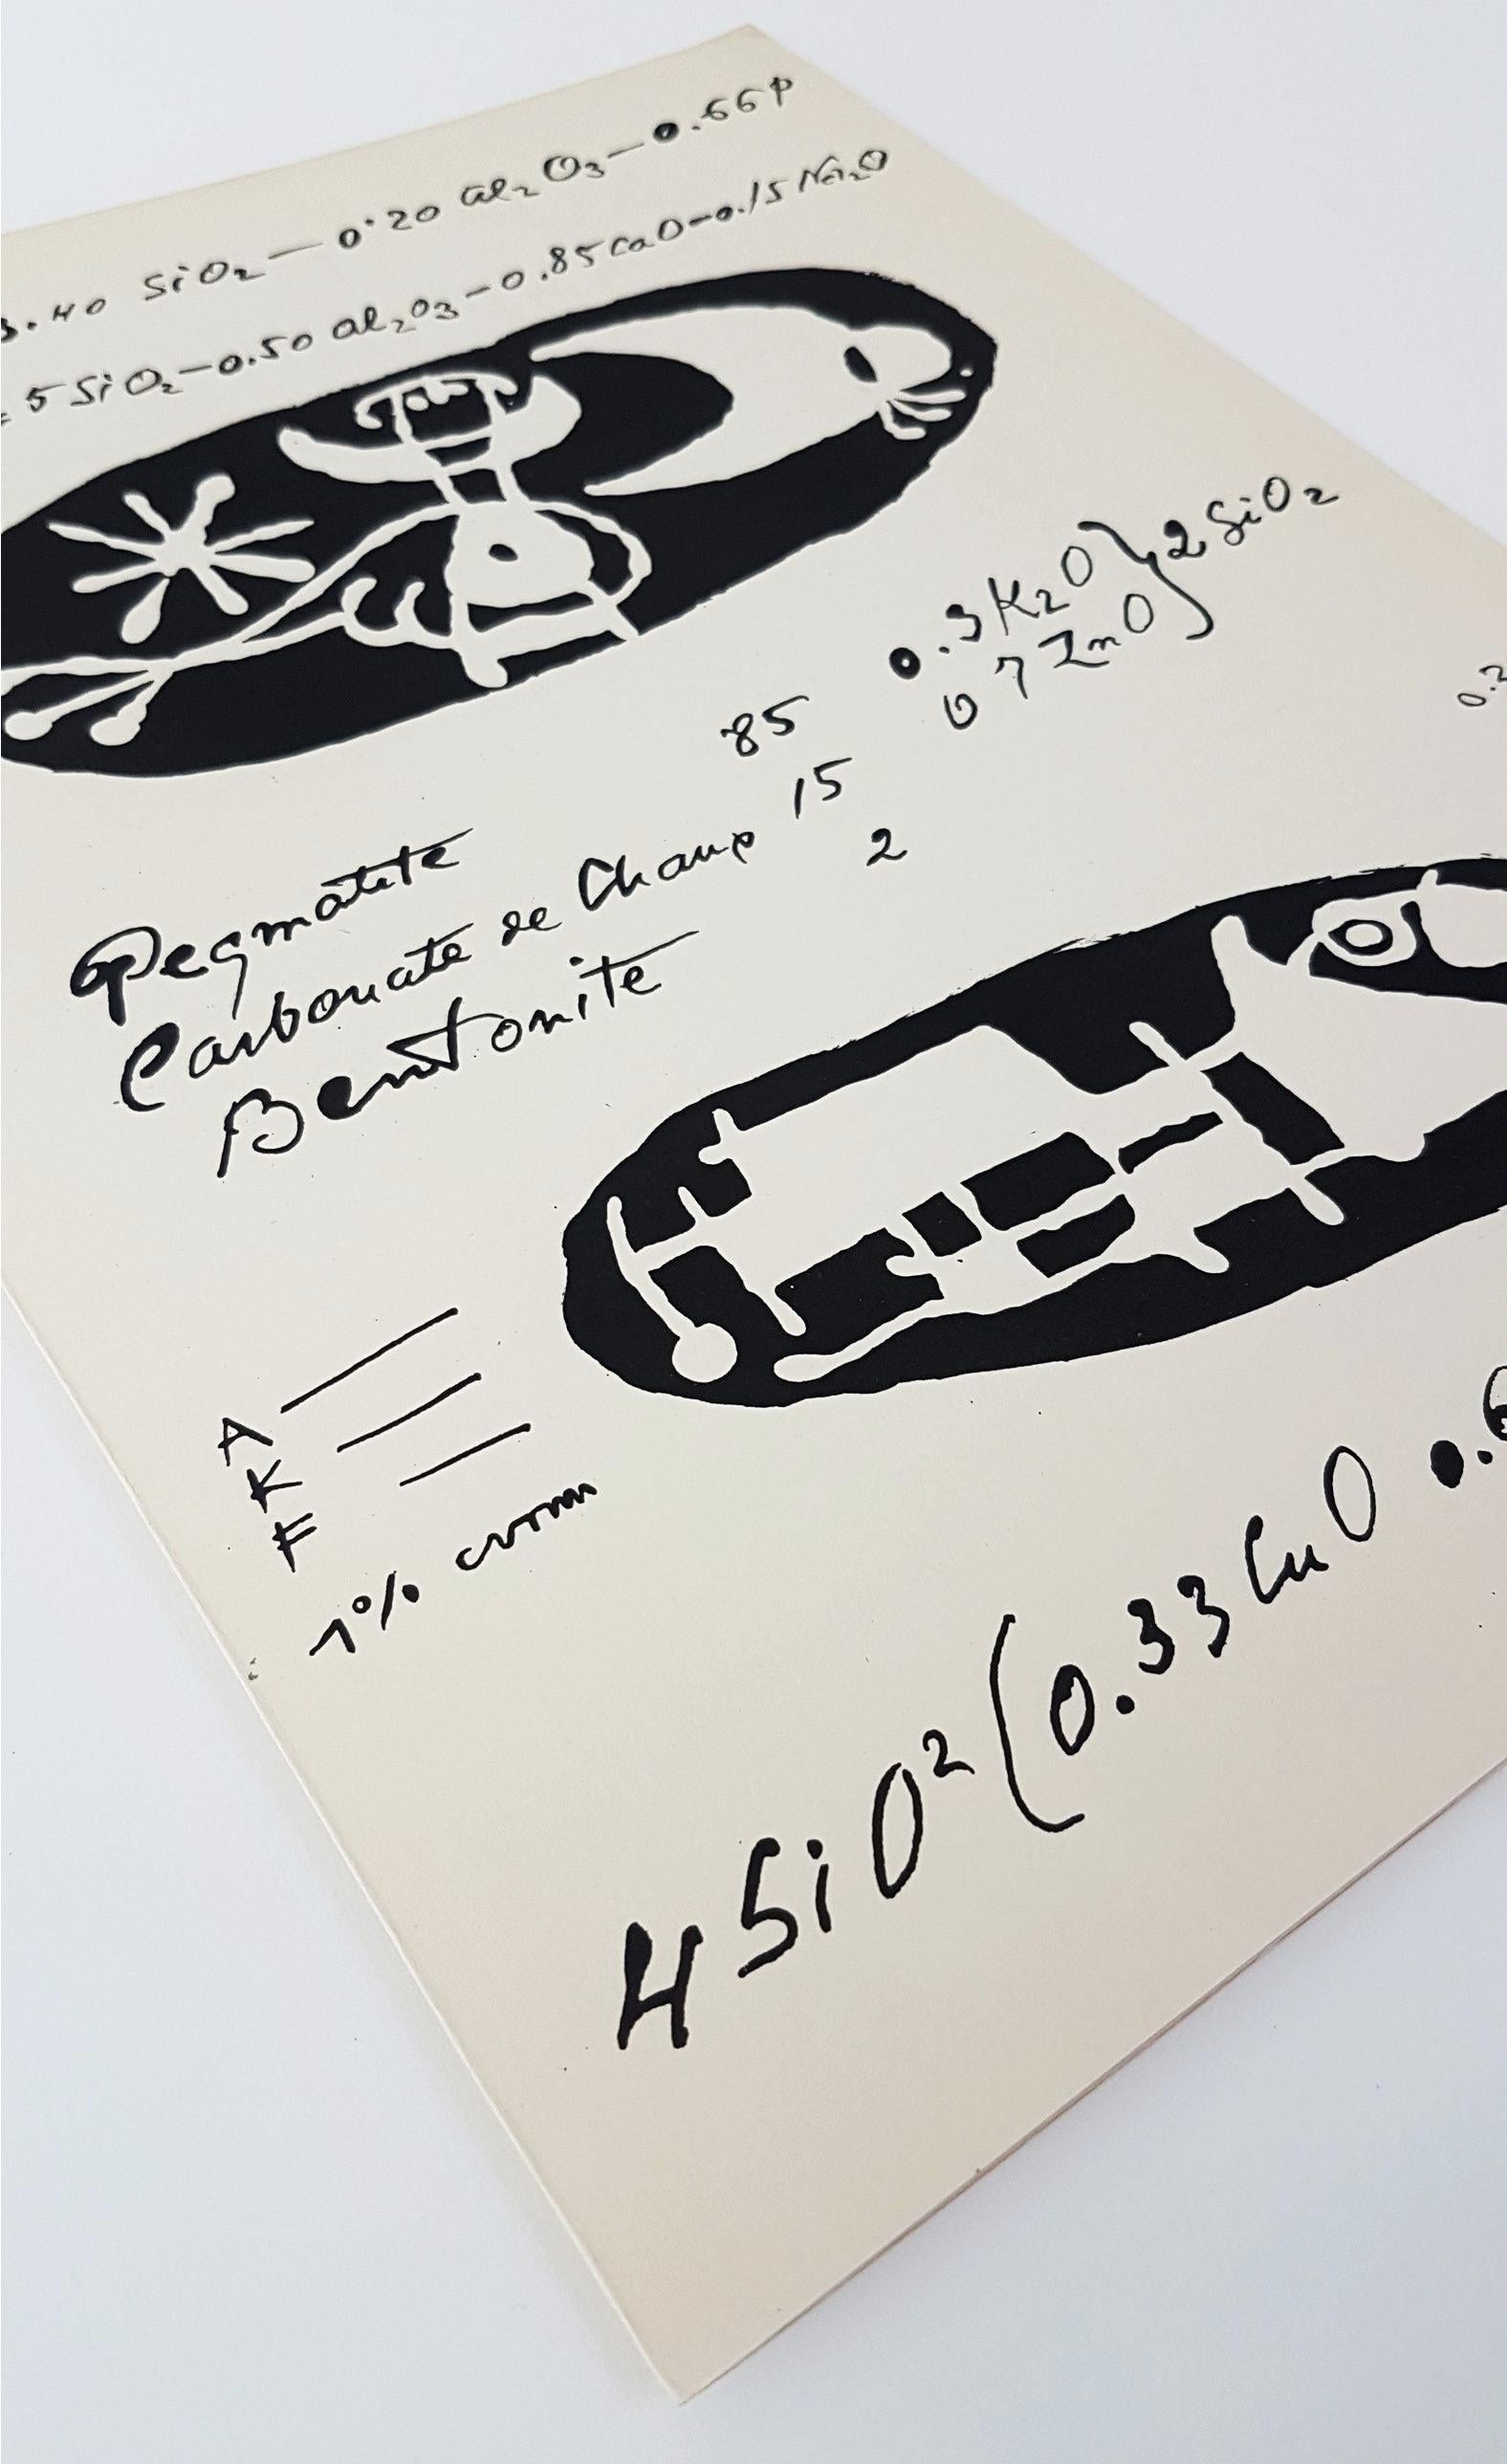 Joan Miro 
Lithographier Originale (ein Teller von Artigas)
Medium: Original-Lithographie
Größe: 14,1875 x 9,8125 Zoll
Jahr: 1956
Auflage: 1,500
Vorzeichenlos
Gedruckter Text auf der Rückseite wie ausgegeben
Mappe: DLM #87-89 (Artigas)
Referenz: